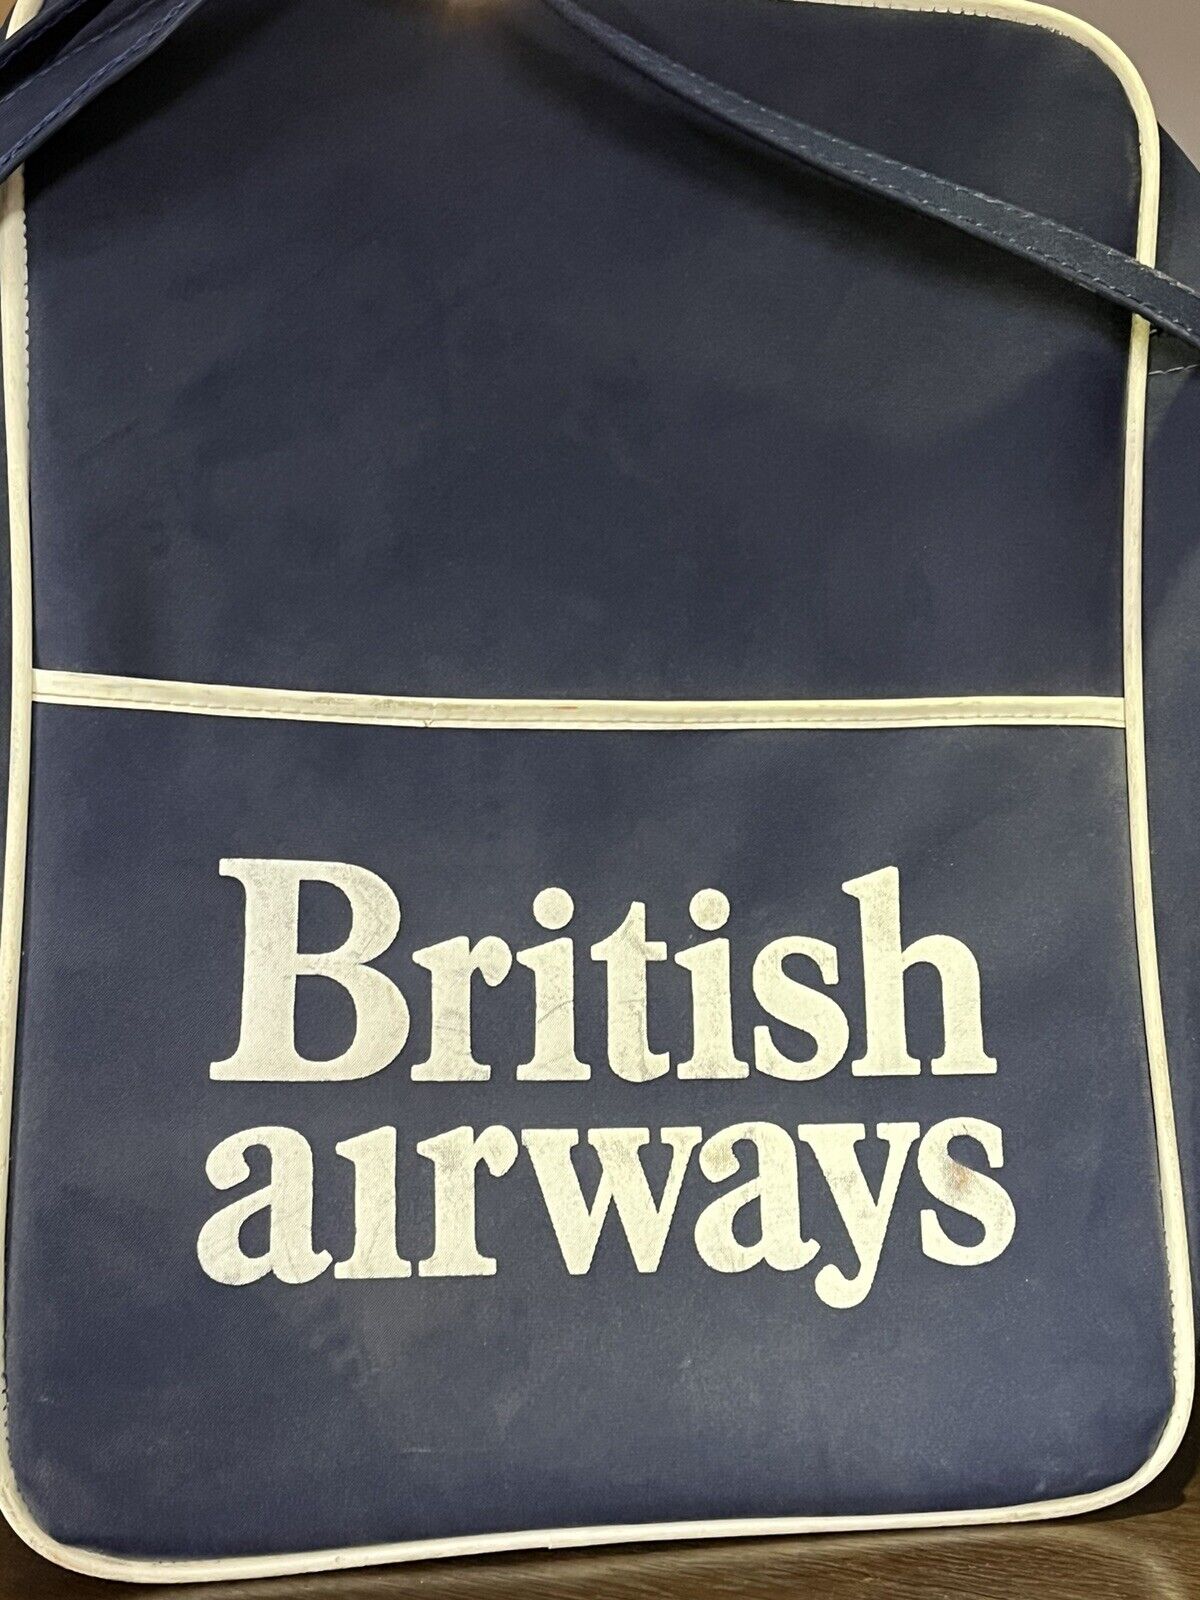 Pair Of Vintage Original Airline Flight Bags